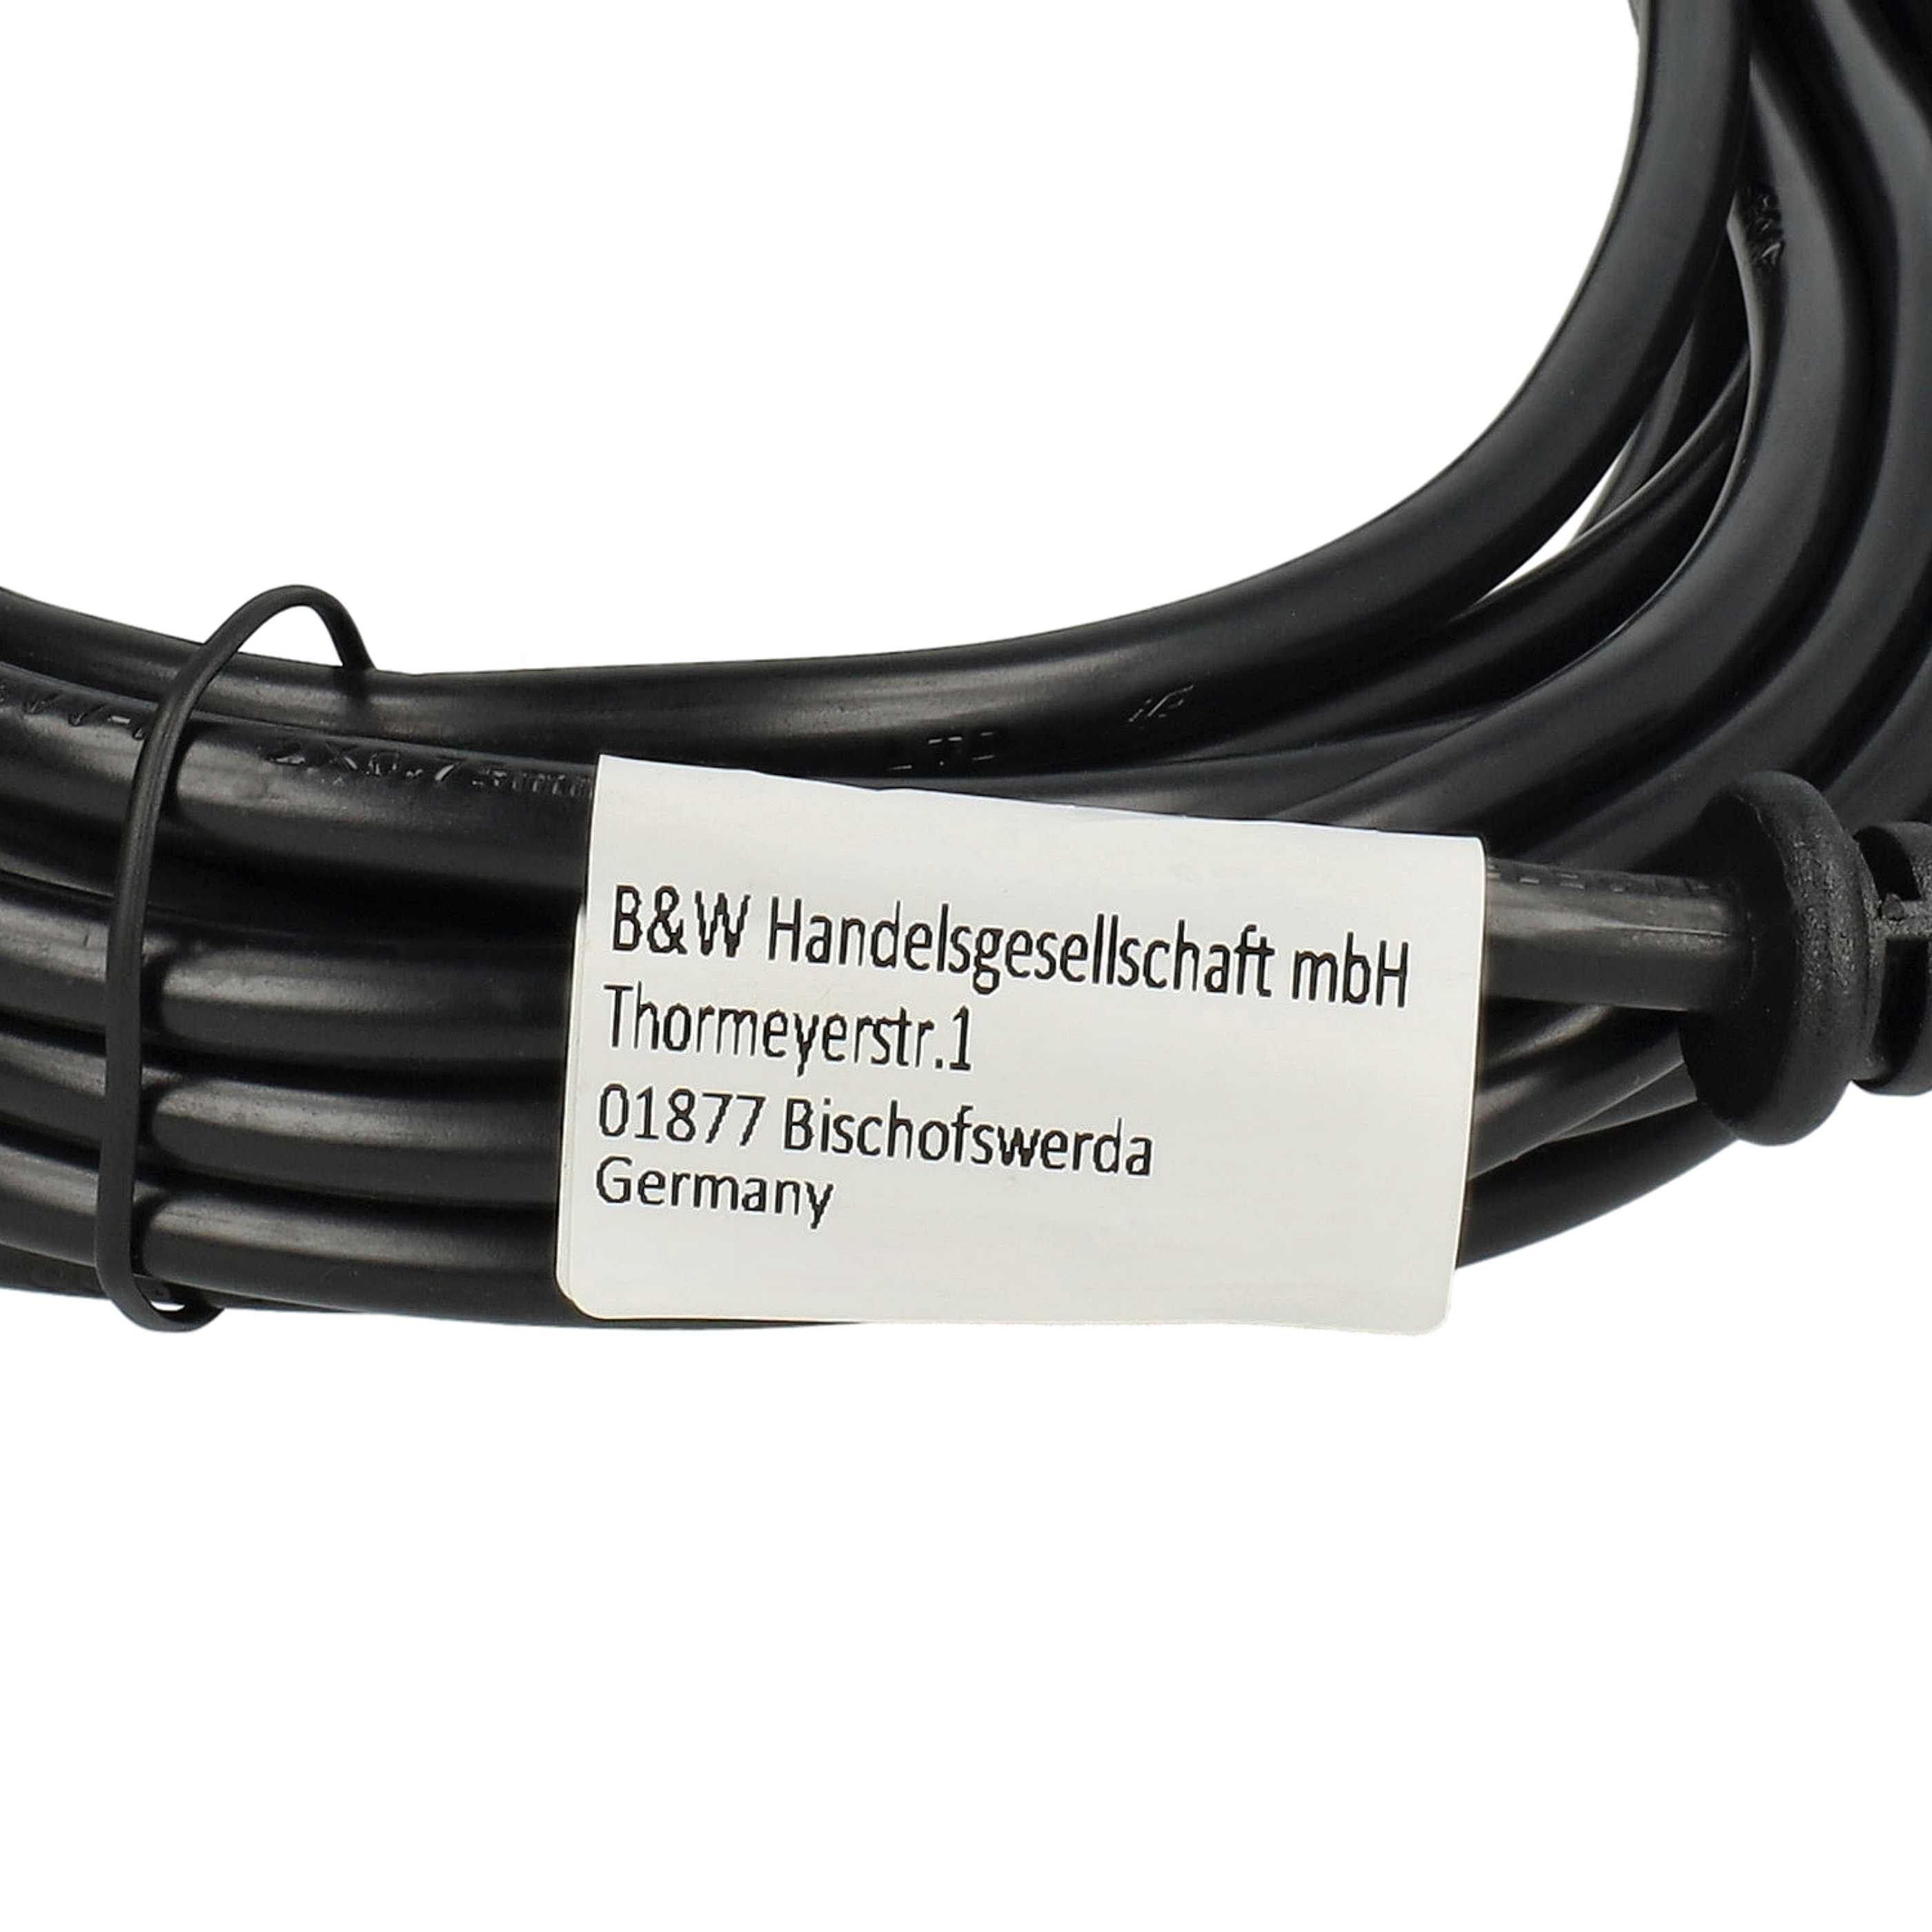 Kabel do odkurzacza Thomas zamiennik Sebo 7128SR, 5260DG - kabel 10 m 1000 W